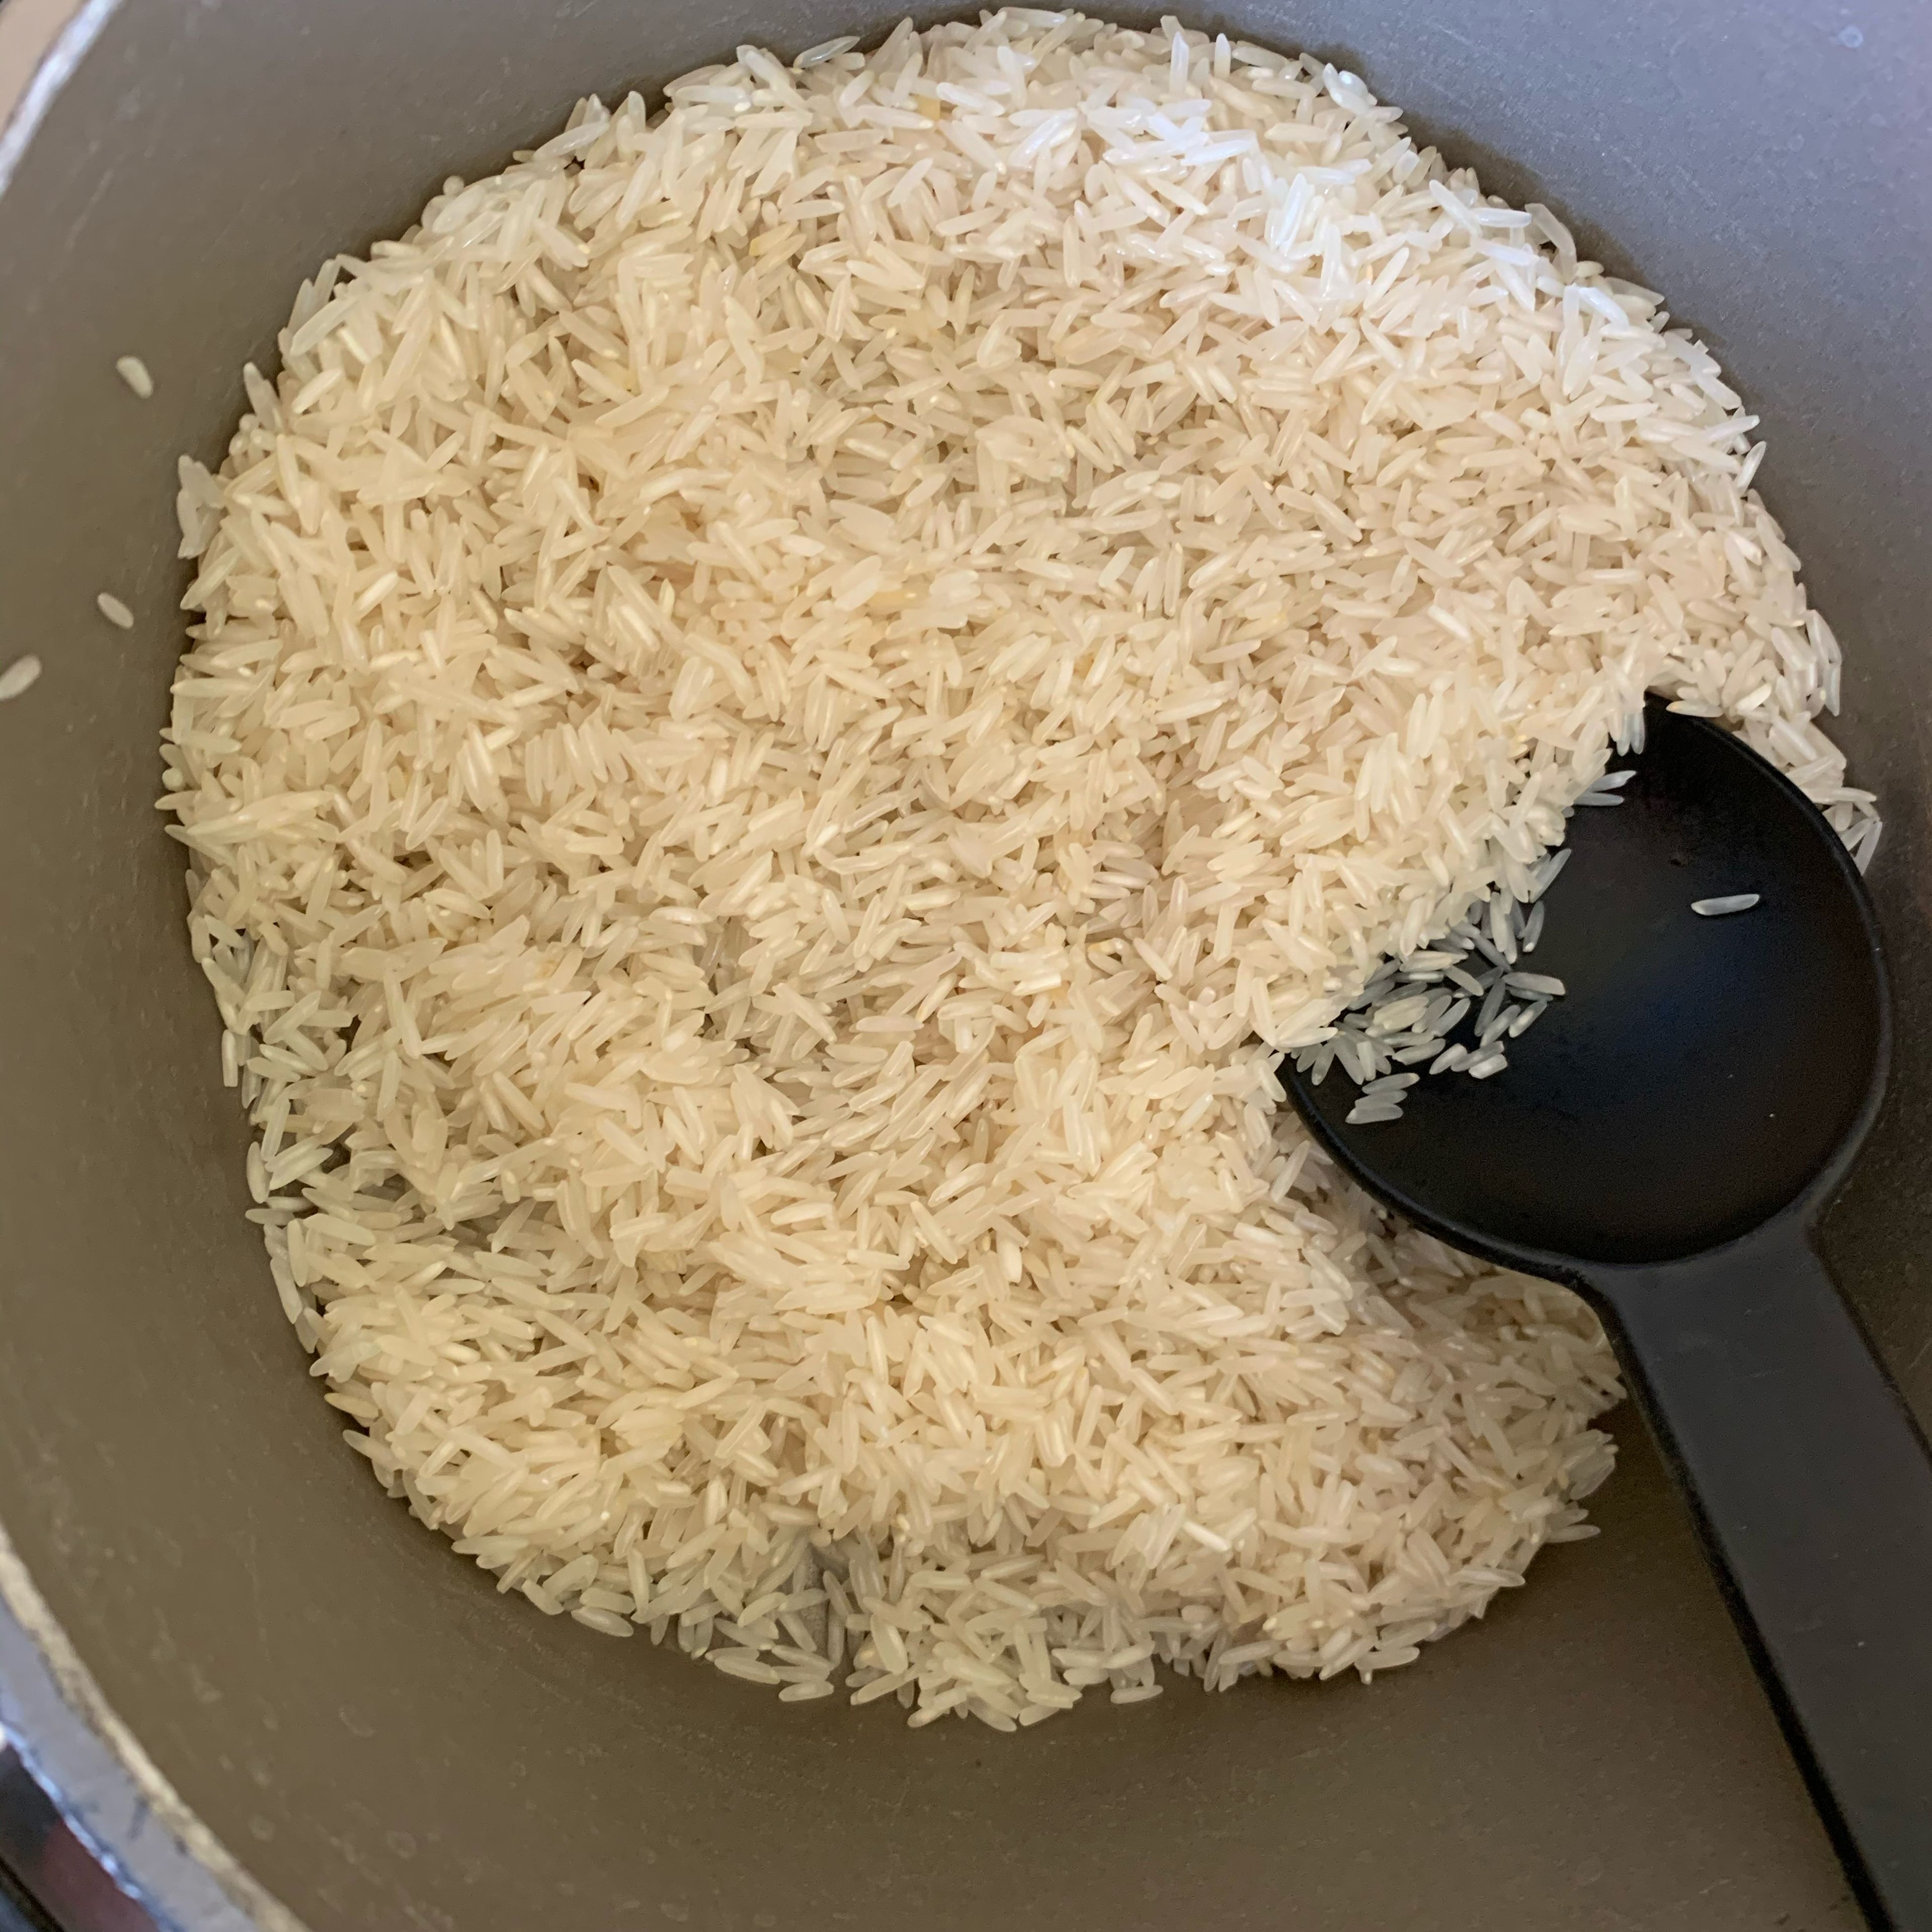 Nun den Reis nach Anleitung aufcder Packung kochen, danach kalt abspülen und in eine große Schüssel geben.